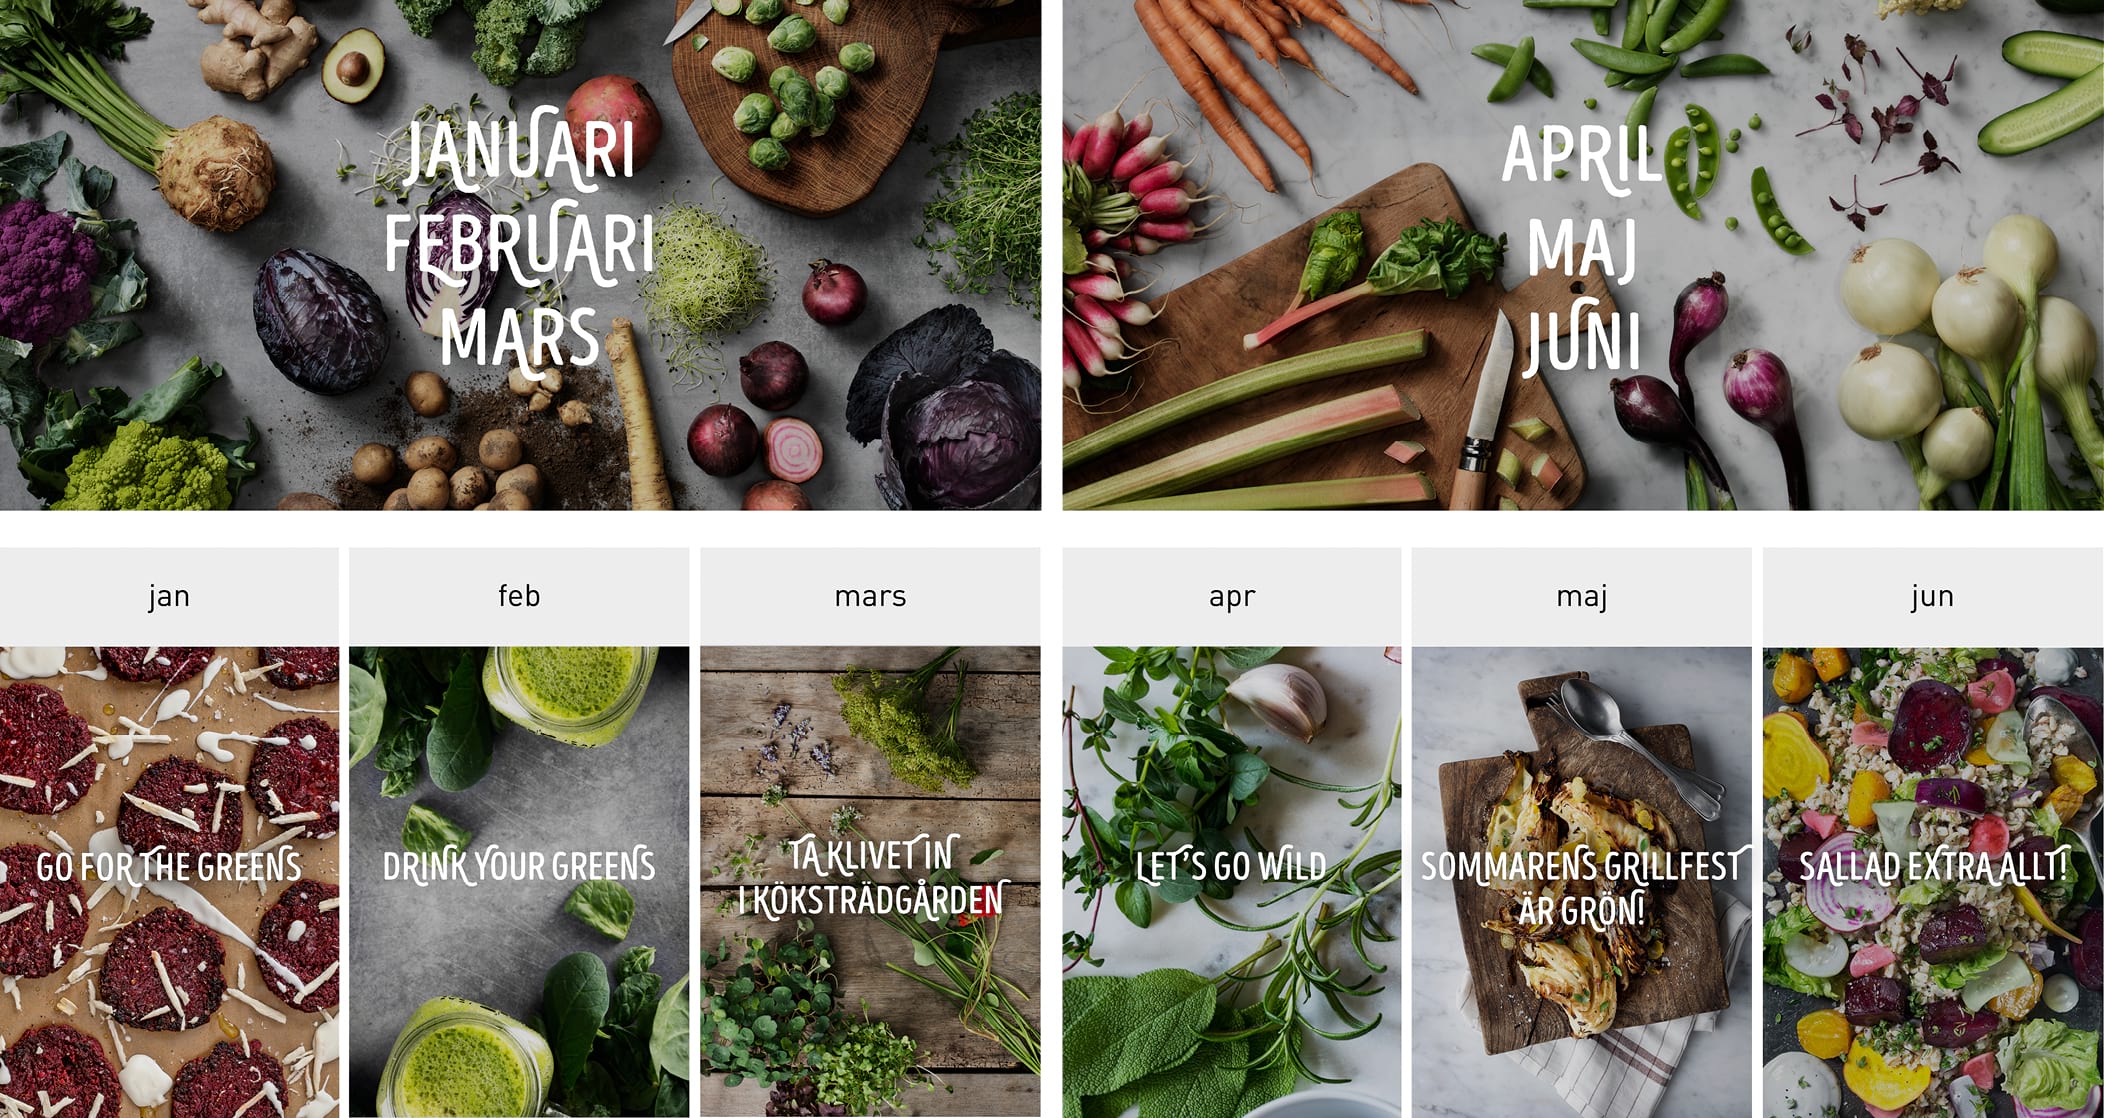 Kampanjbilder månadsvis med estetiska bilder med grönsaker och råvaror